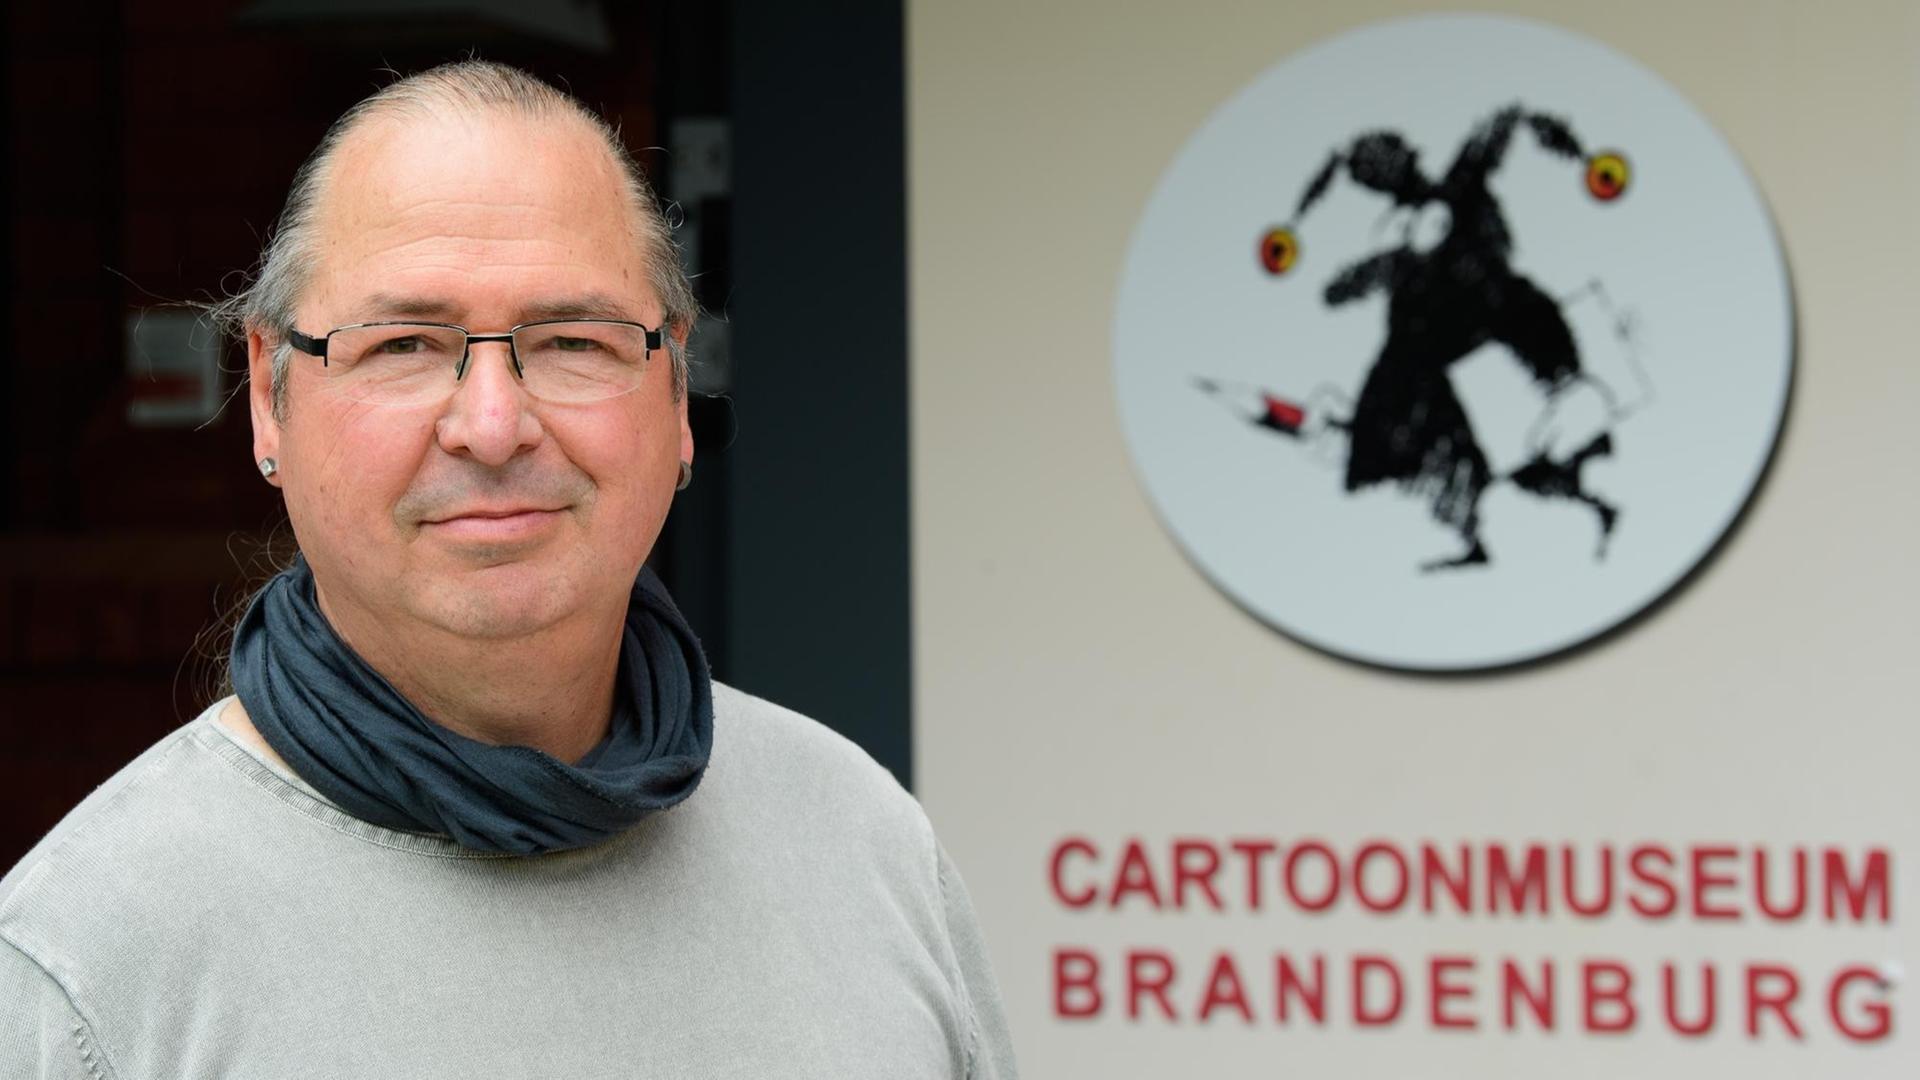 Museumsleiter Andreas Nicolai steht am Eingang zum Cartoonmuseum Brandenburg.